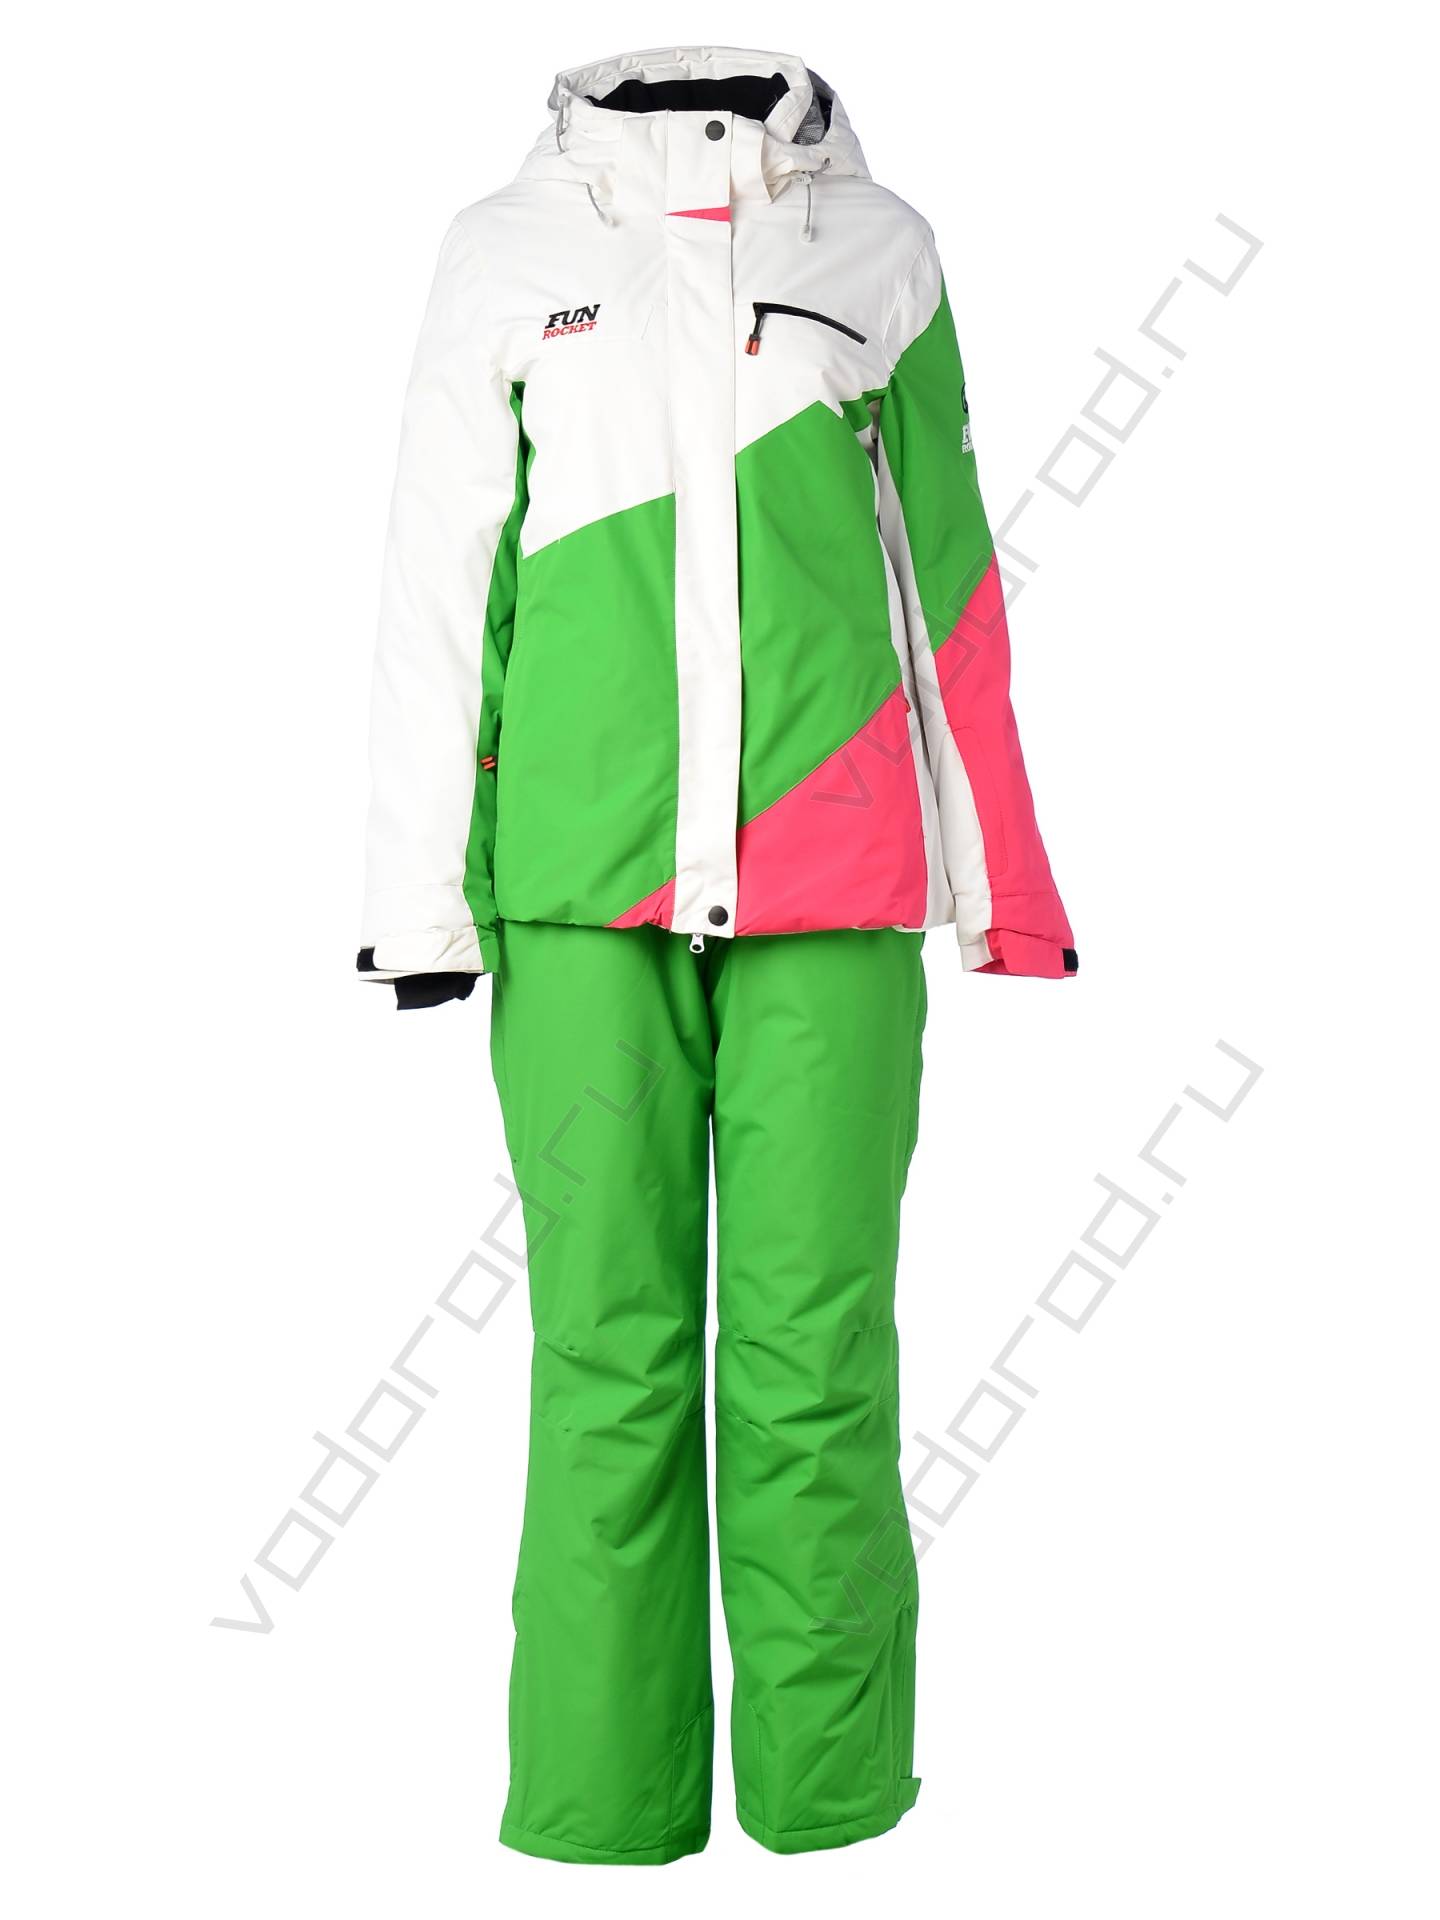 Горнолыжный костюм женский цвет белый/зеленый